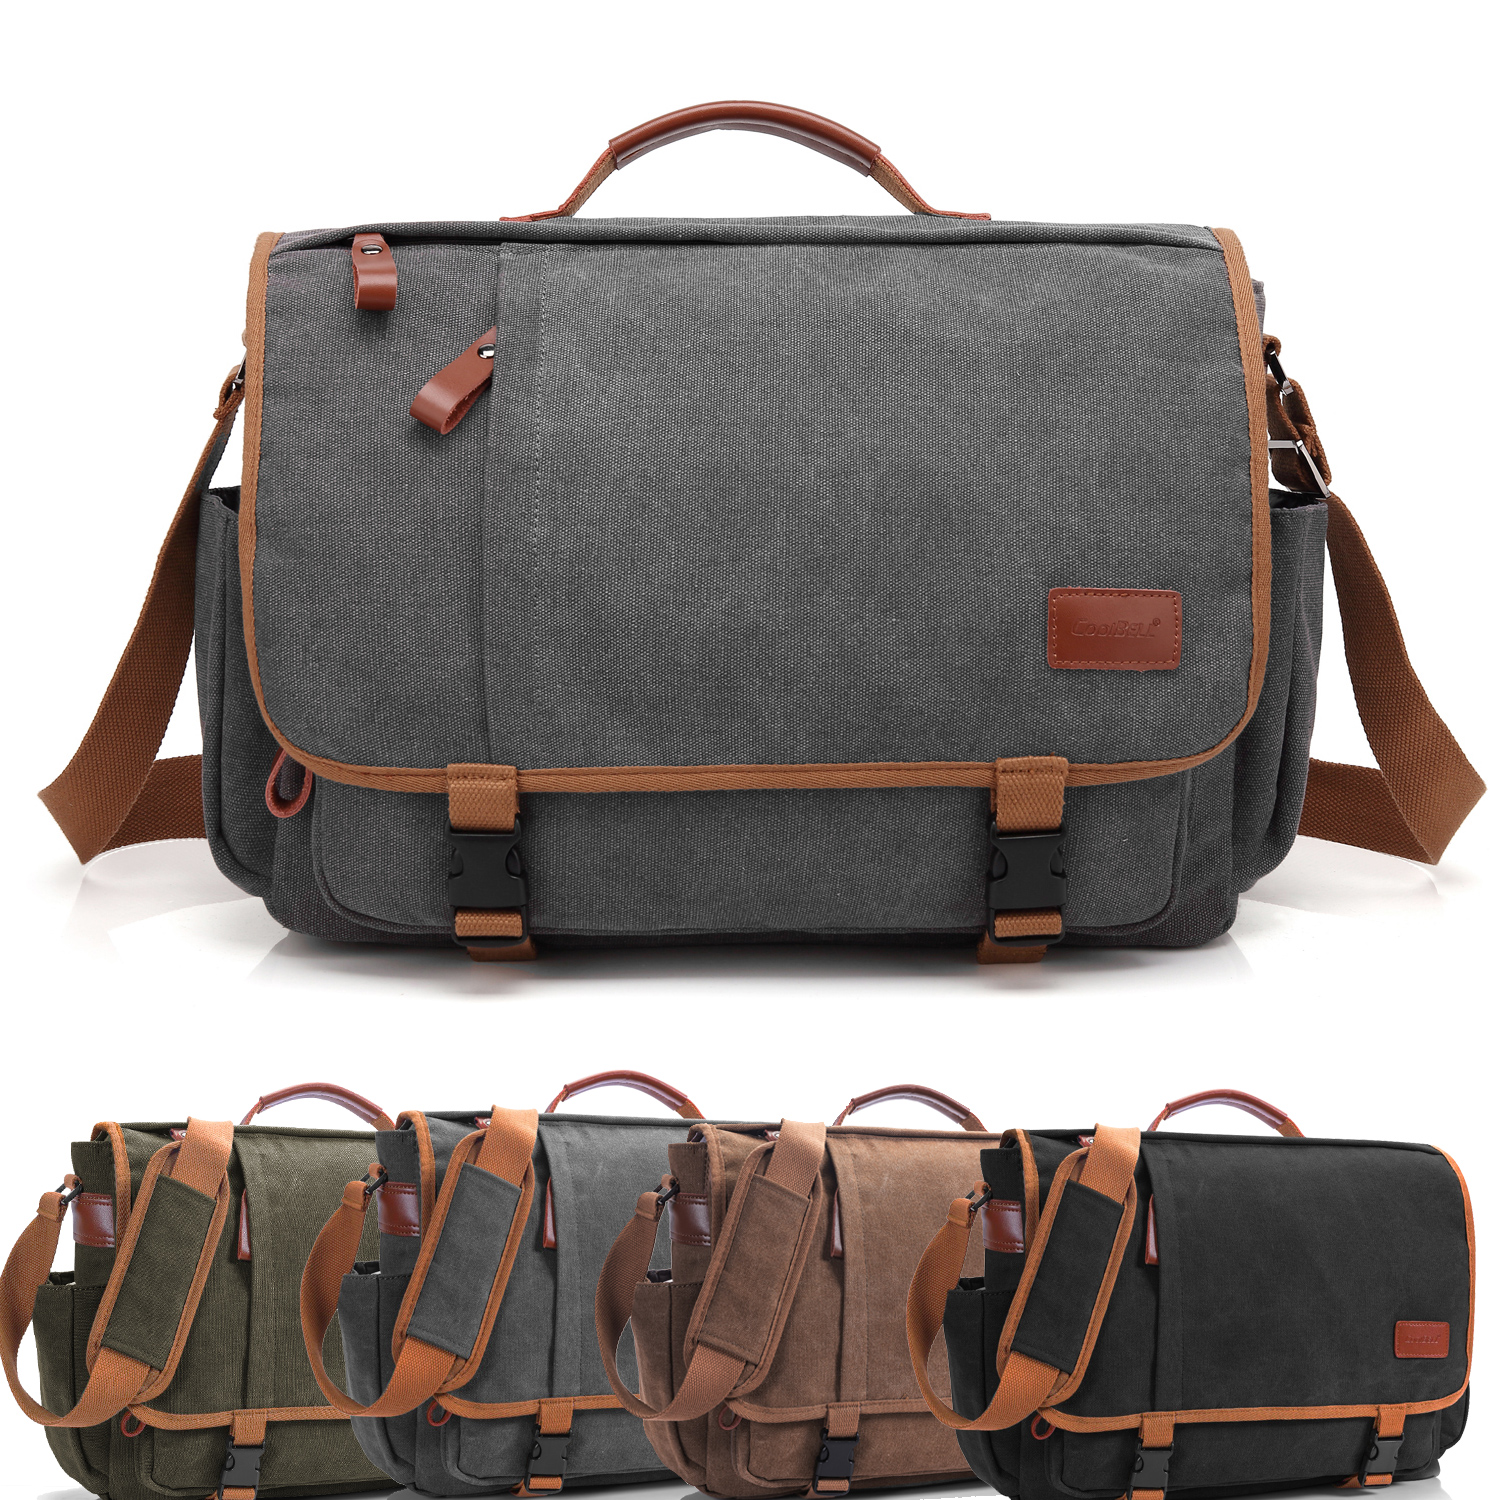 Adjustable Strap Leather Canvas Messenger Bag for Men,15.6 inch Laptop Bag  at Rs 3150 in Udaipur